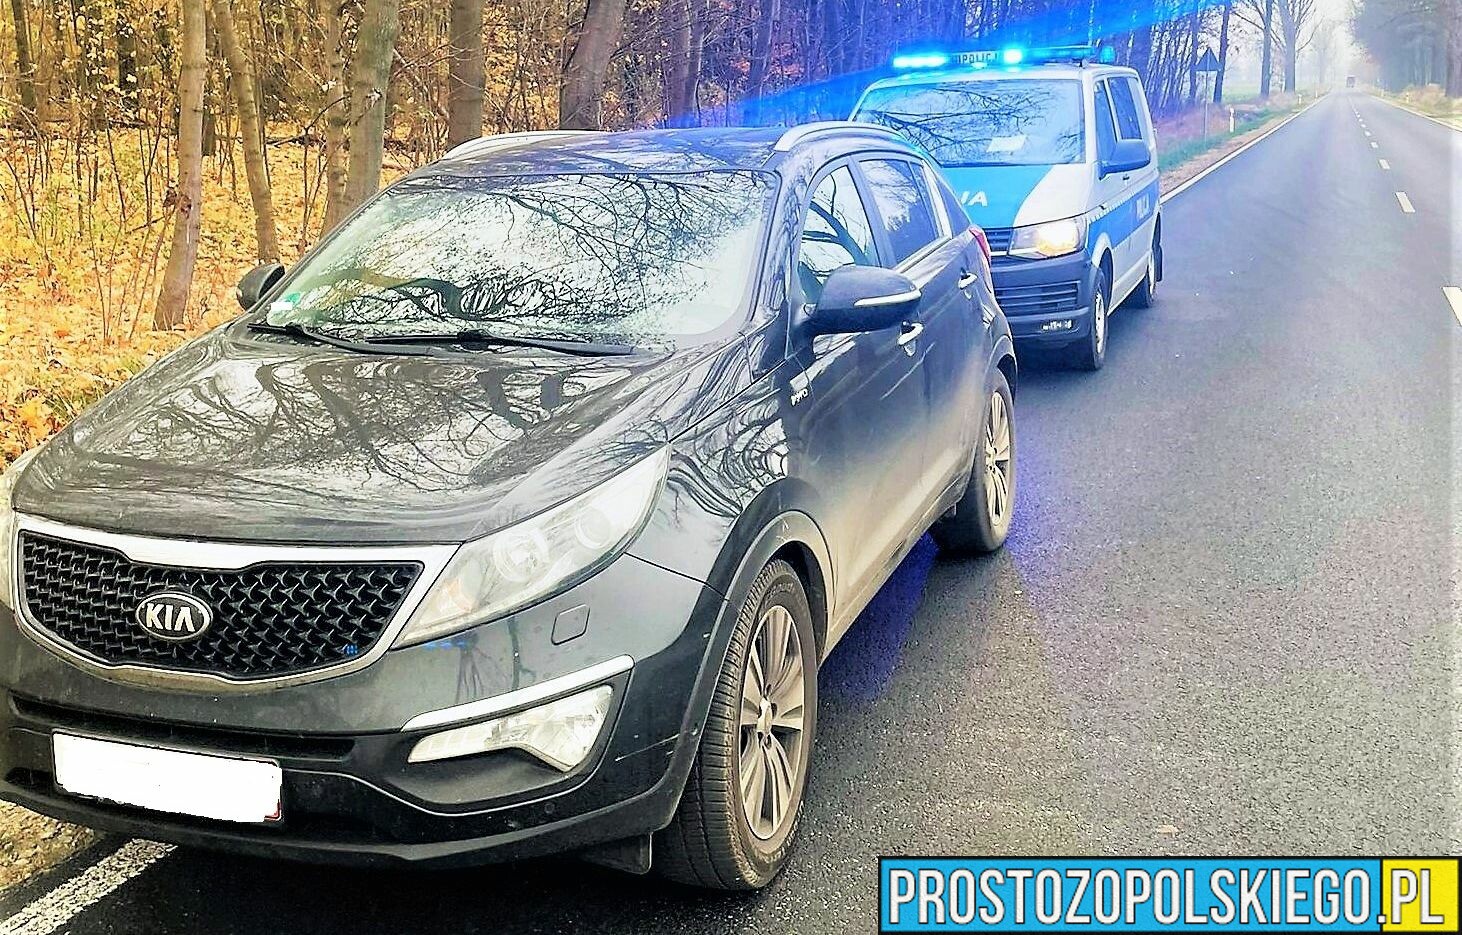 Policyjny pościg w okolicach Świerczowa w powiecie namysłowskim. Kierowca miał 2,5 promila.